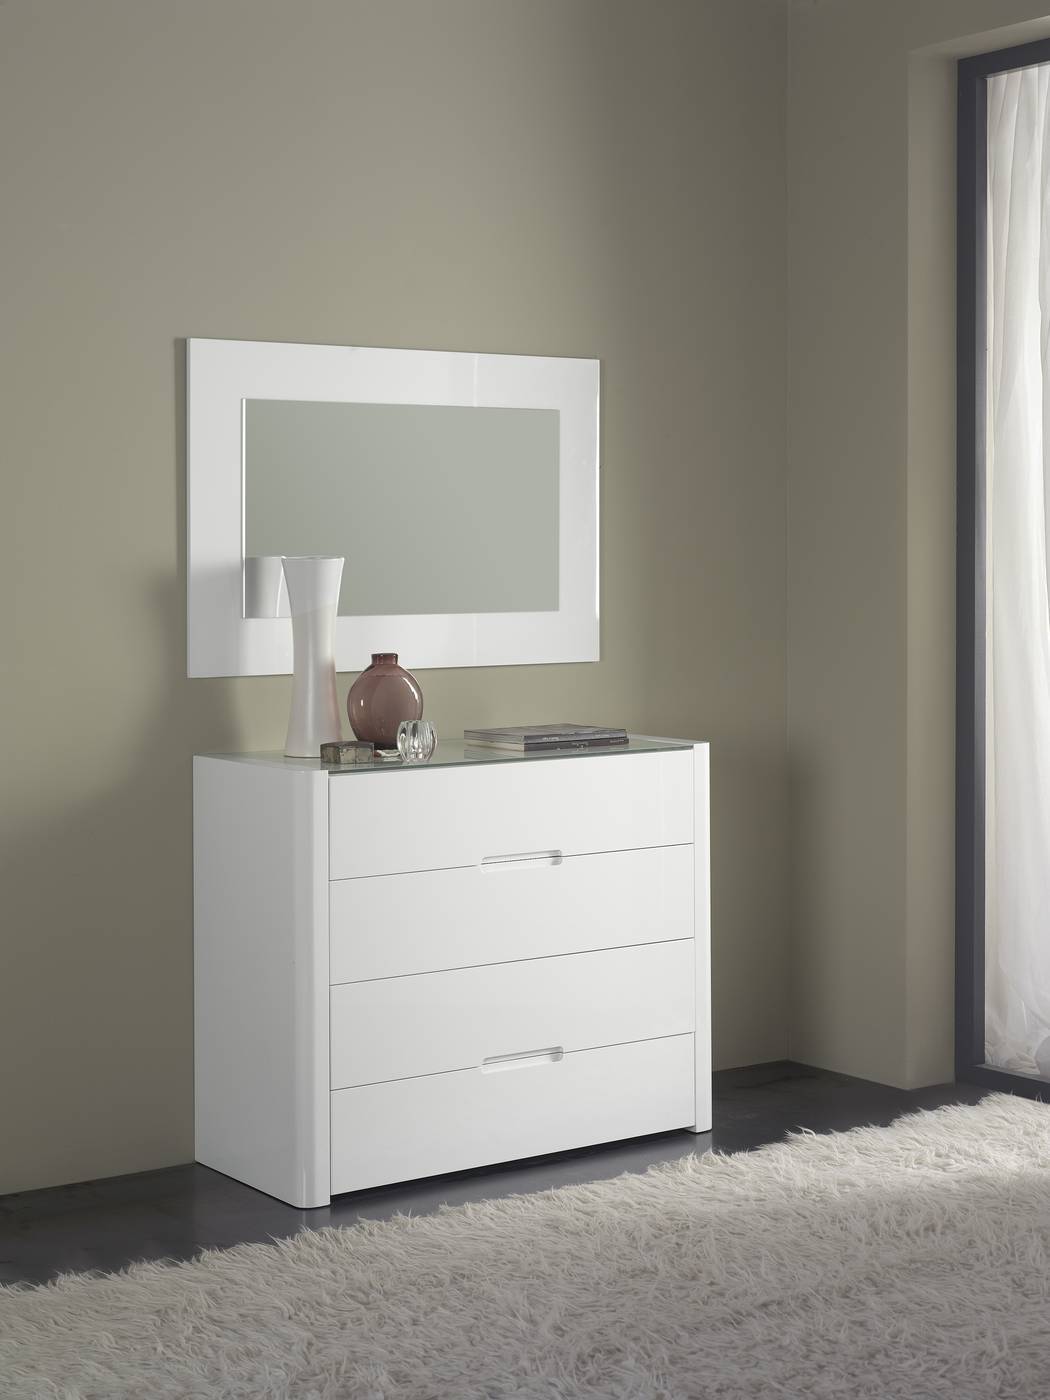 Cómoda de diseño minimalista, con 4 cajones, lacada en color blanco brillo